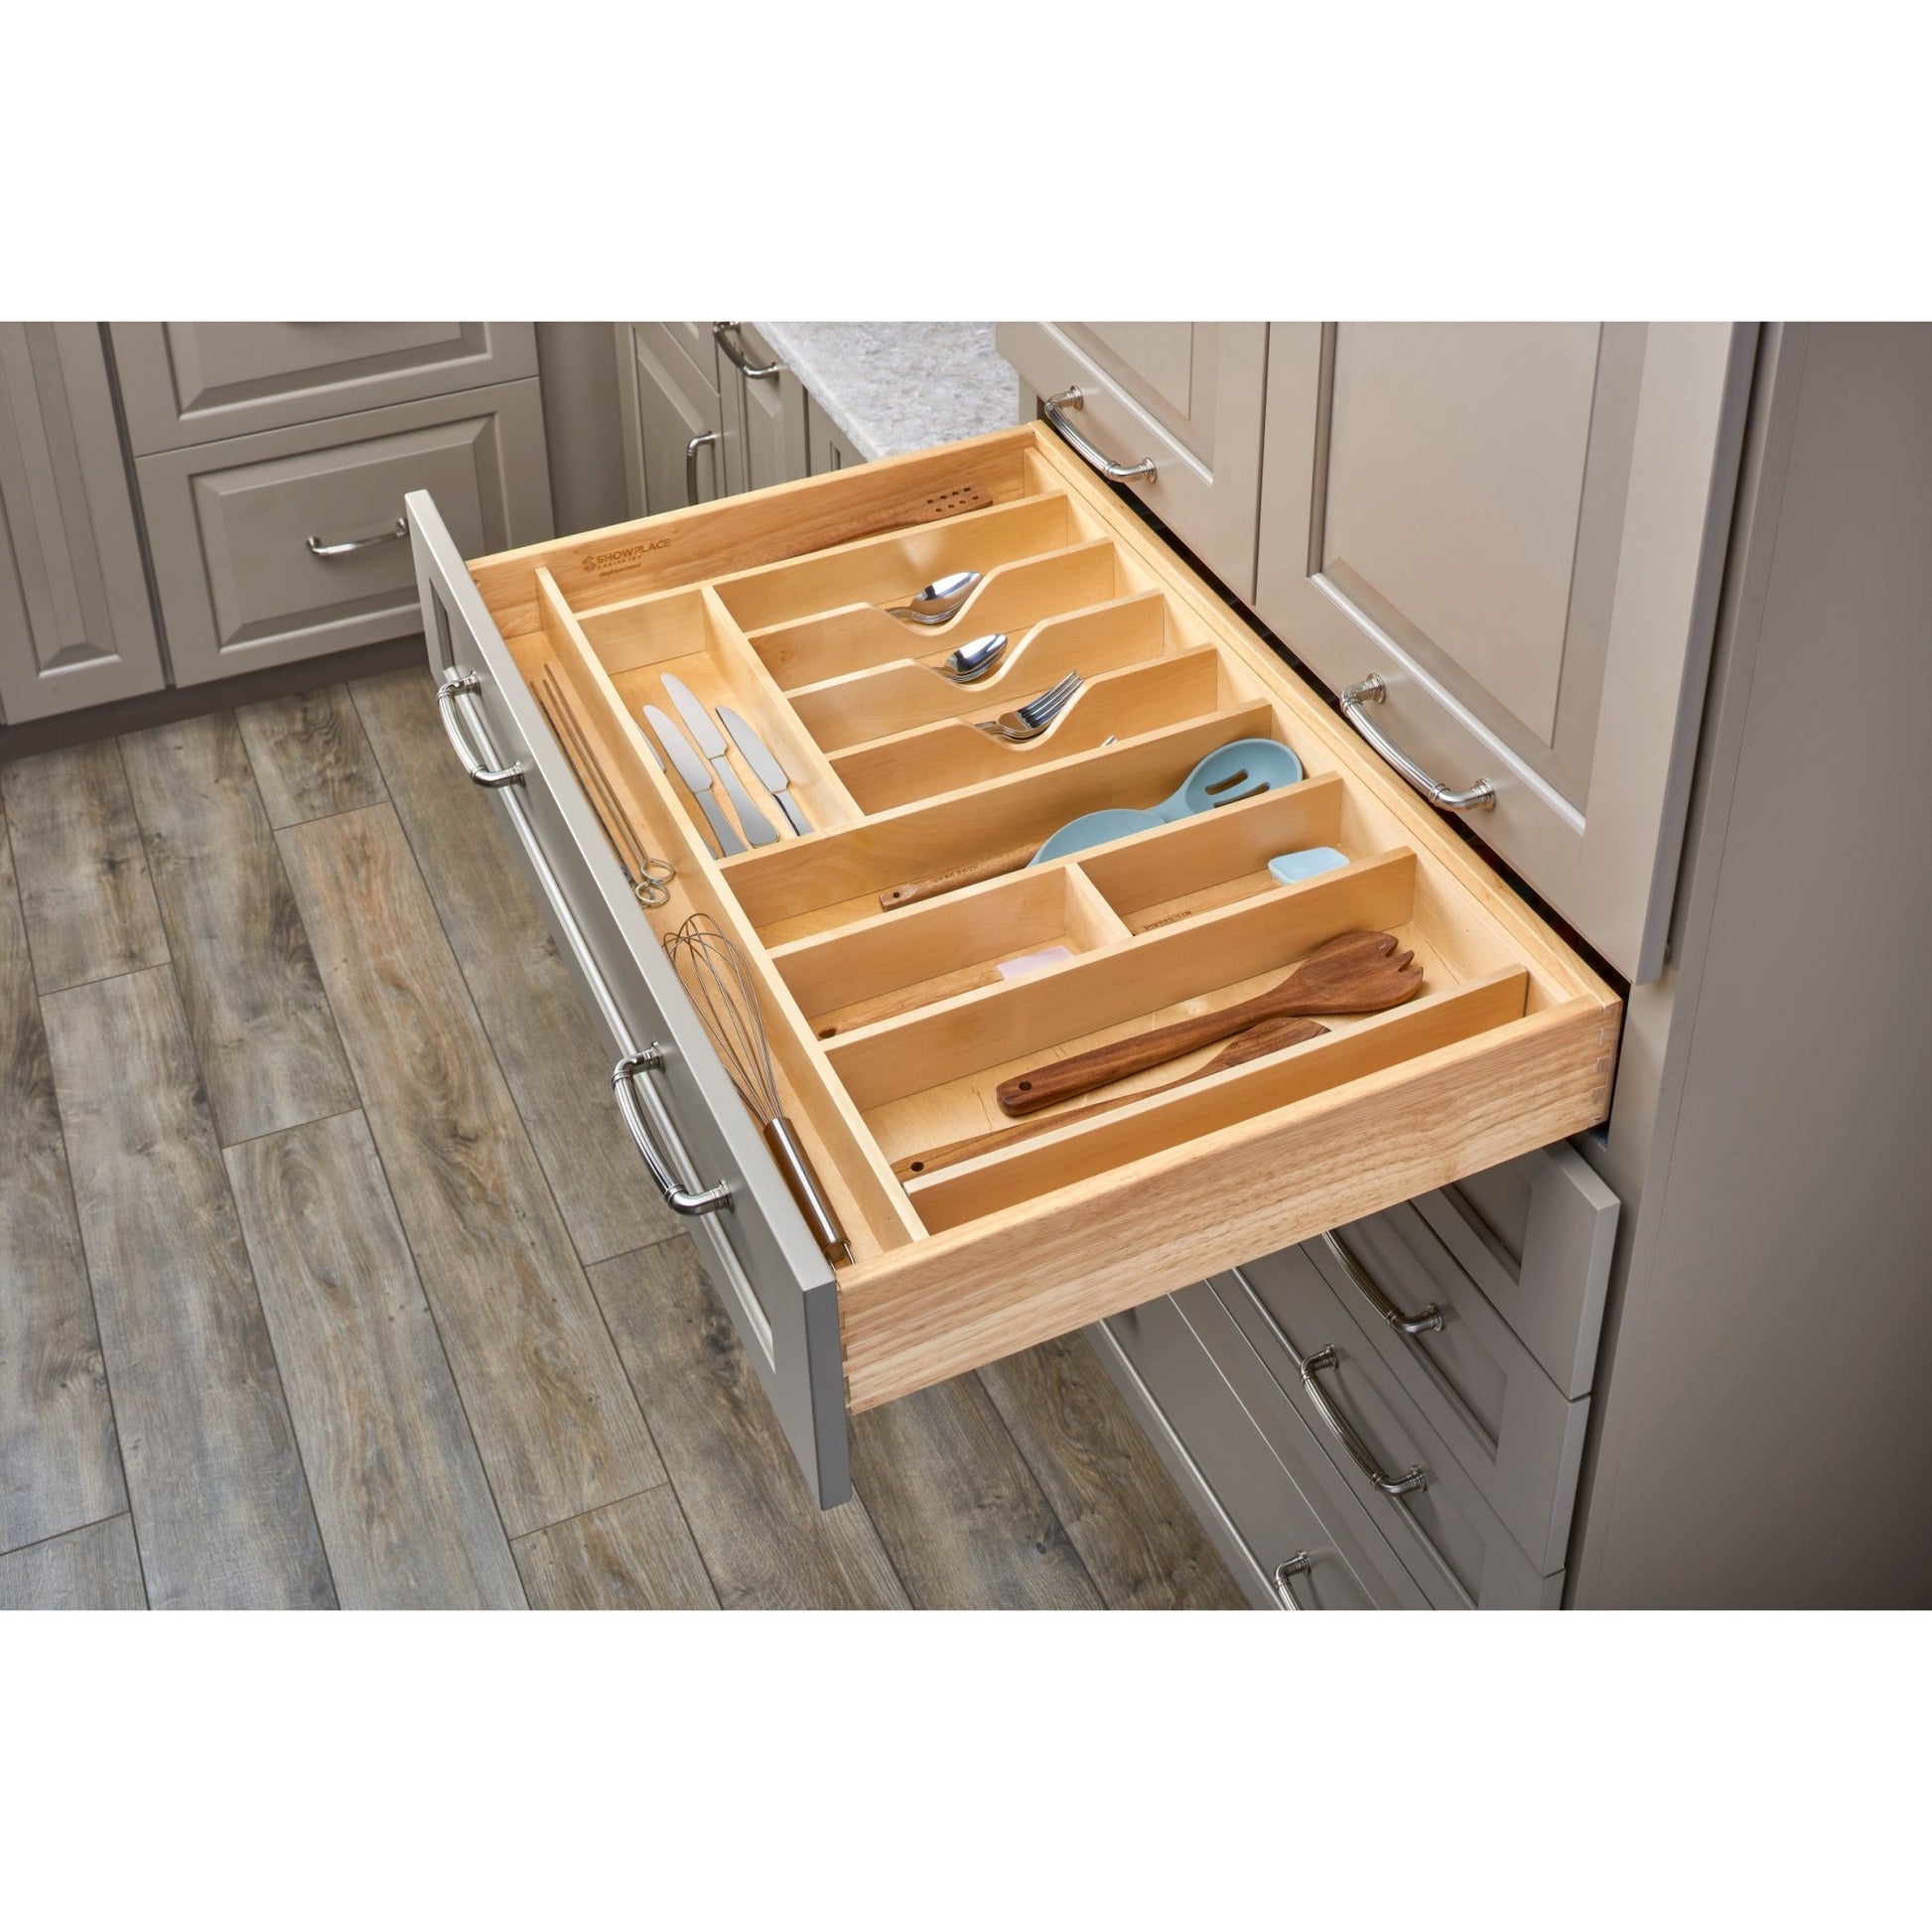 Rev-A-Shelf - Wood Trim to Fit Utility/Cutlery Drawer Insert Organizer - 4WUTCT-36-1